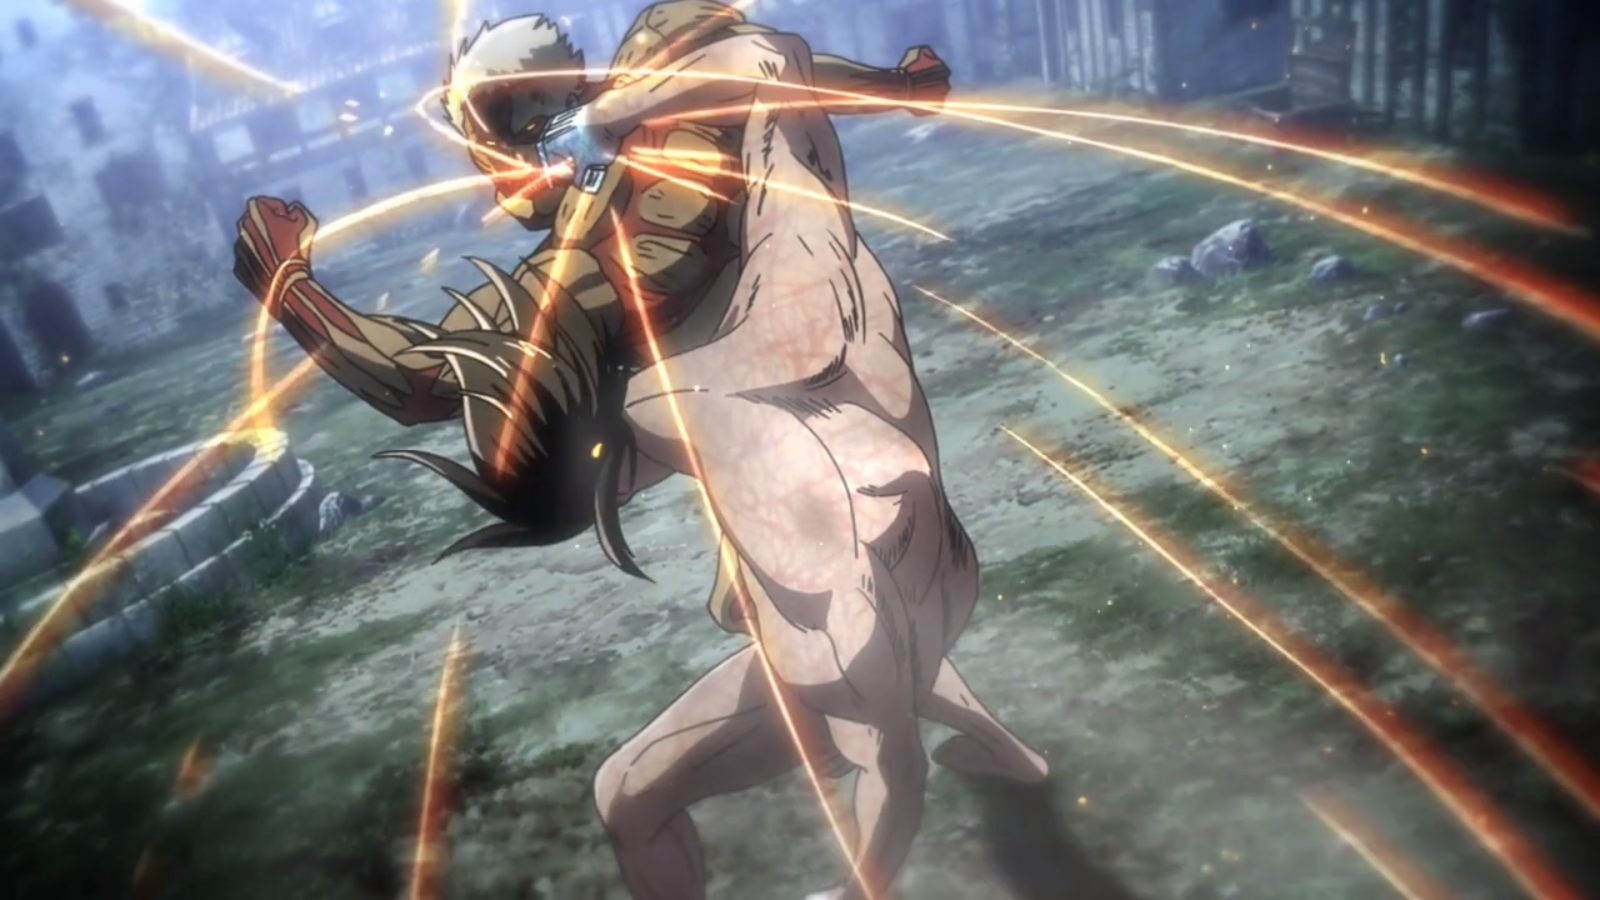 Attack Titan (Anime). Attack on Titan